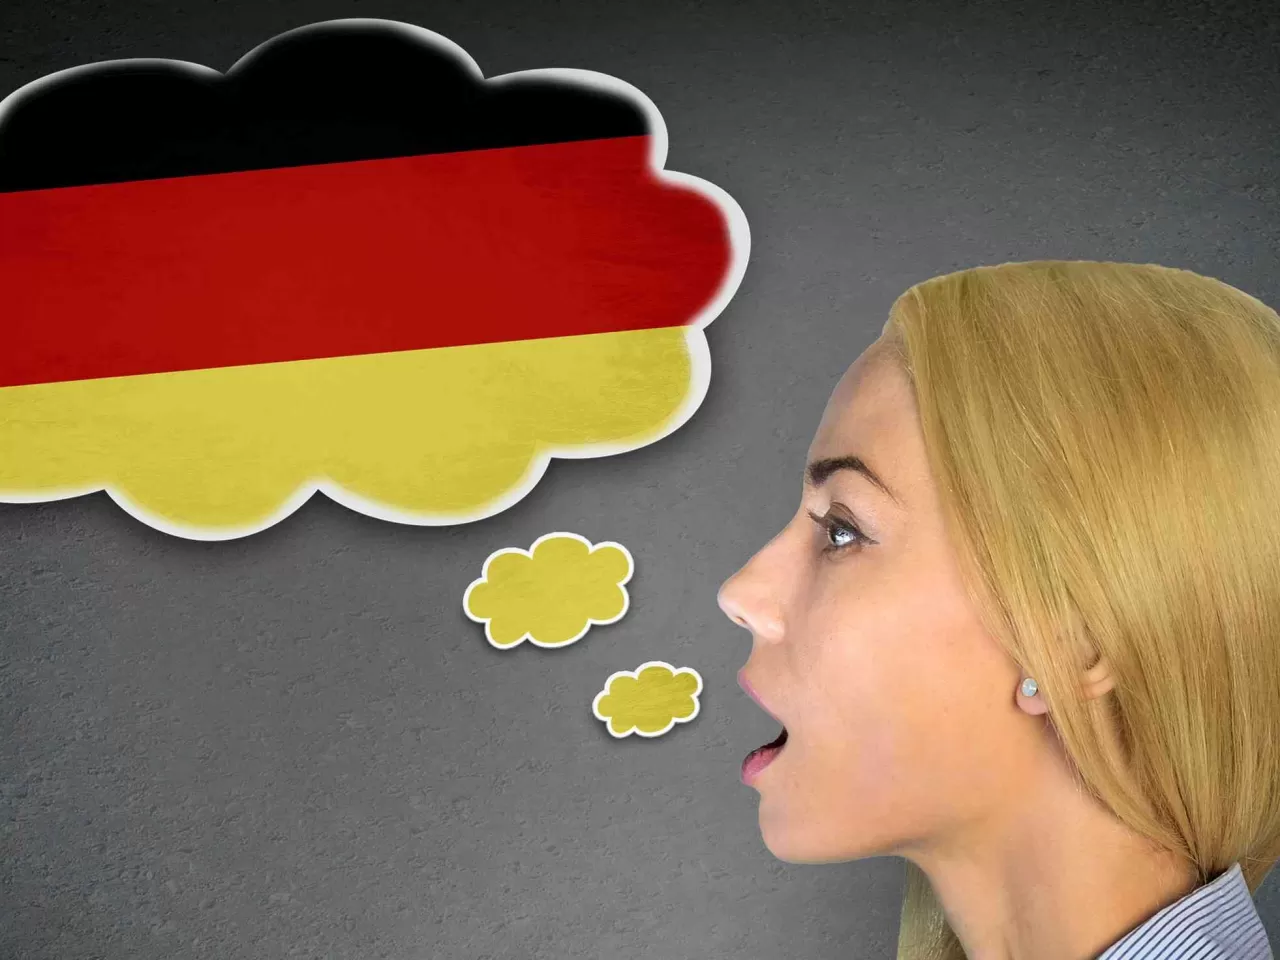 Almanca Öğrenme Uygulamaları - Almanca Öğreten En İyi 12 Mobil Uygulama